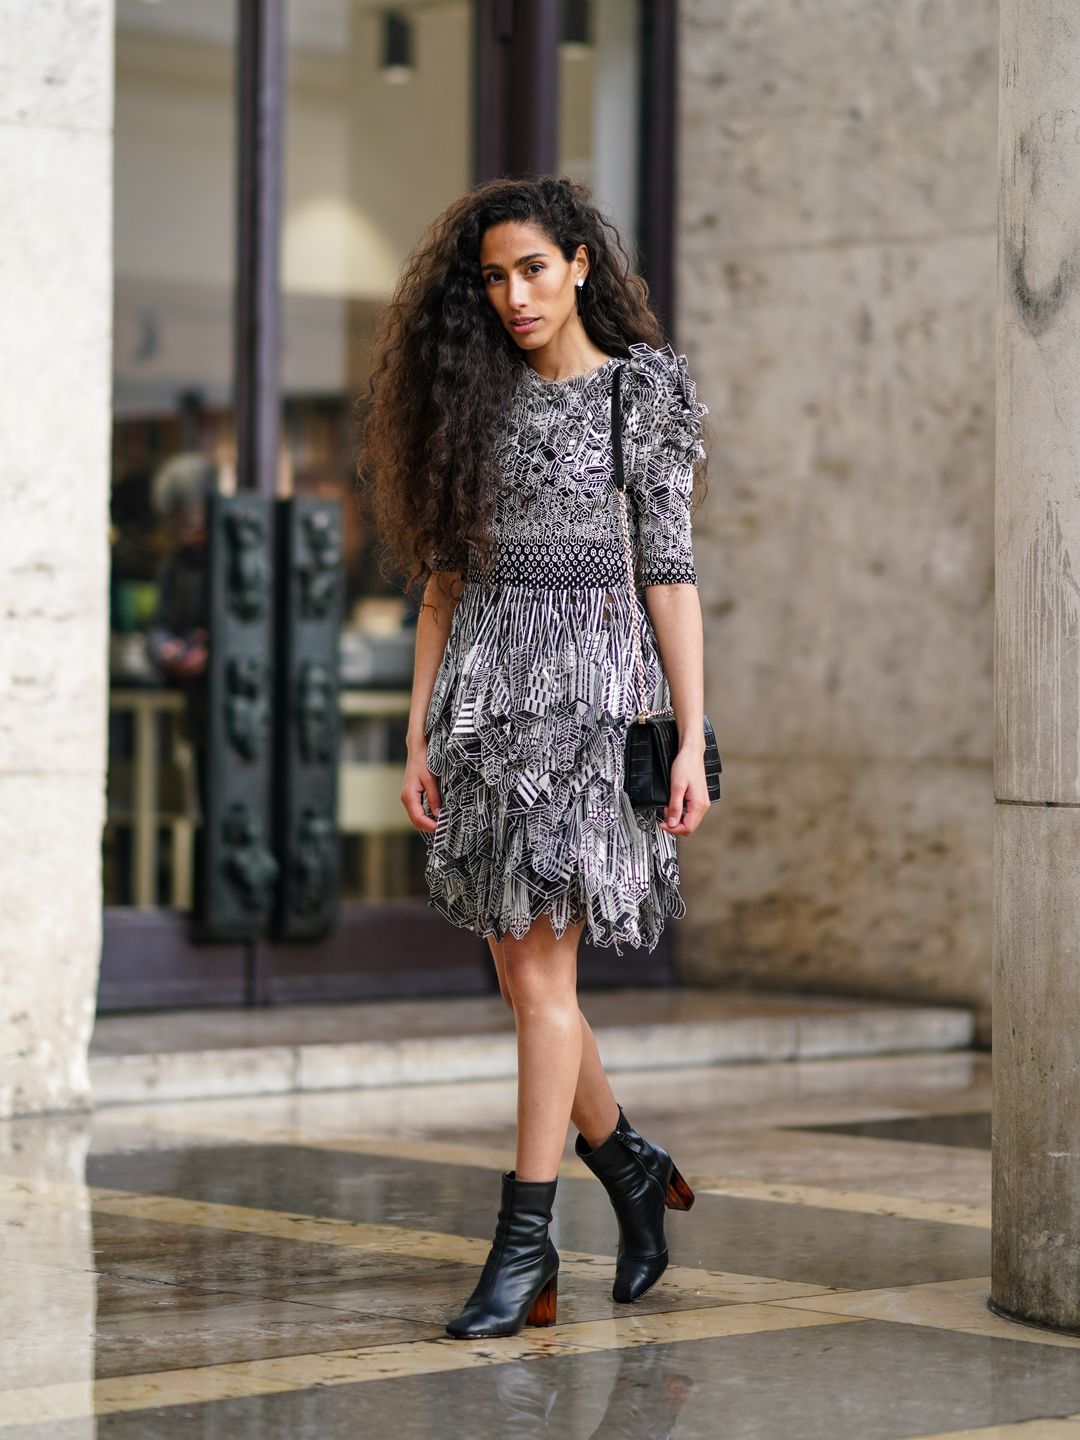 Singer Ciinderella Balthazar shows off her voluminous curls during Paris Fashion Week